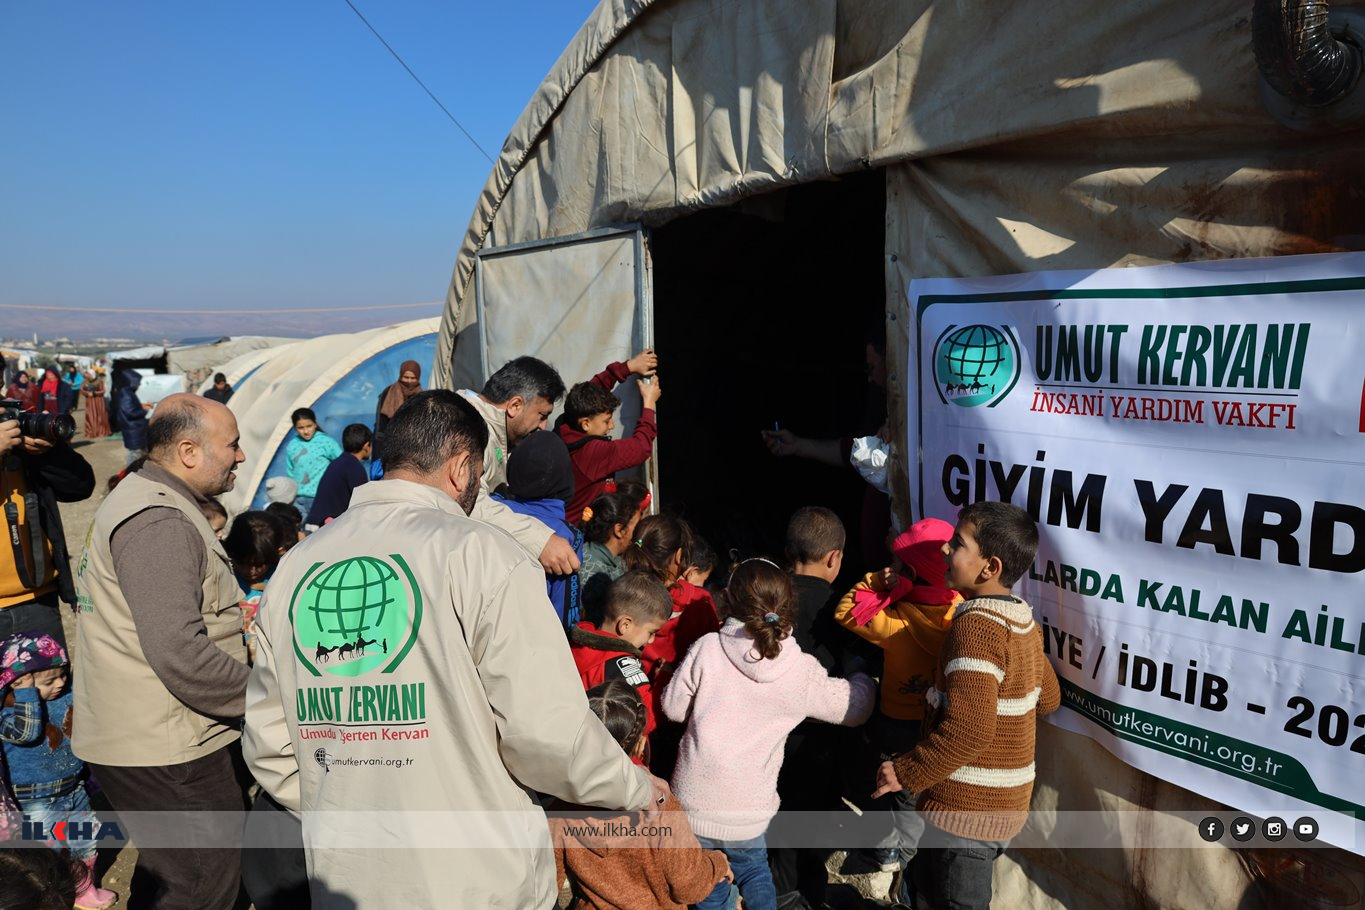 Hope Caravan carries on humanitarian aid efforts in northwestern Syria